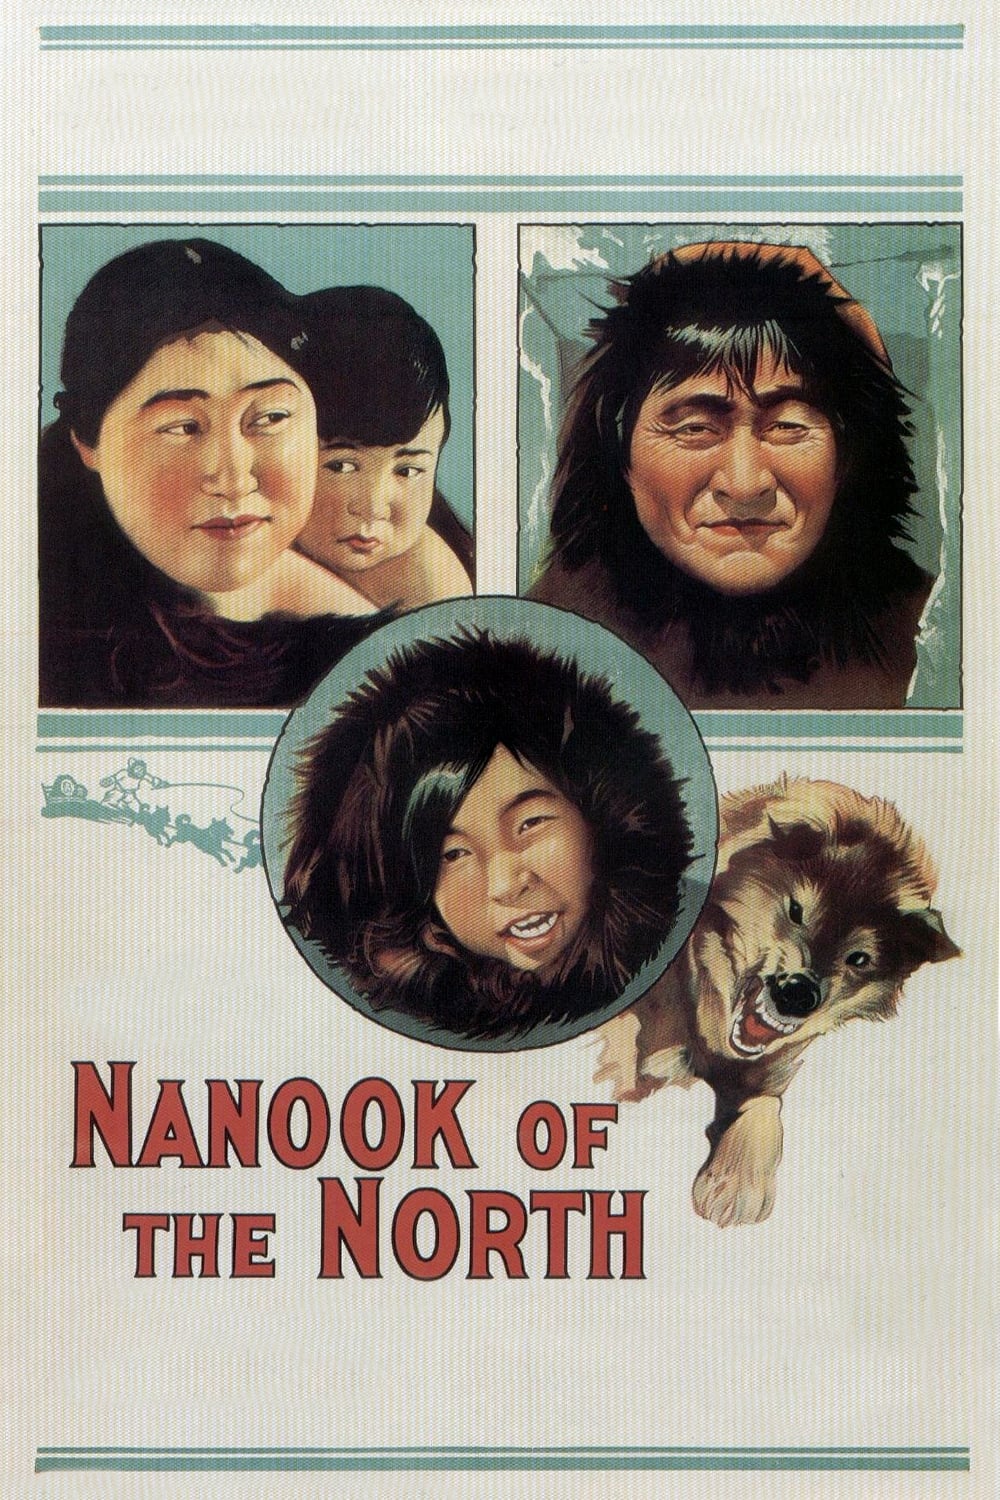 Nanook, o Esquimó (1922)